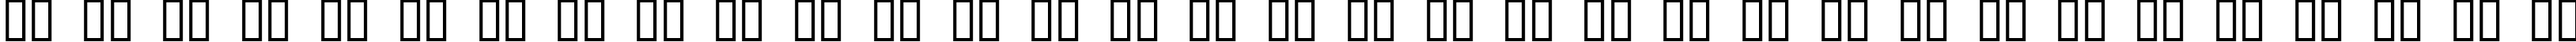 Пример написания русского алфавита шрифтом Legothick